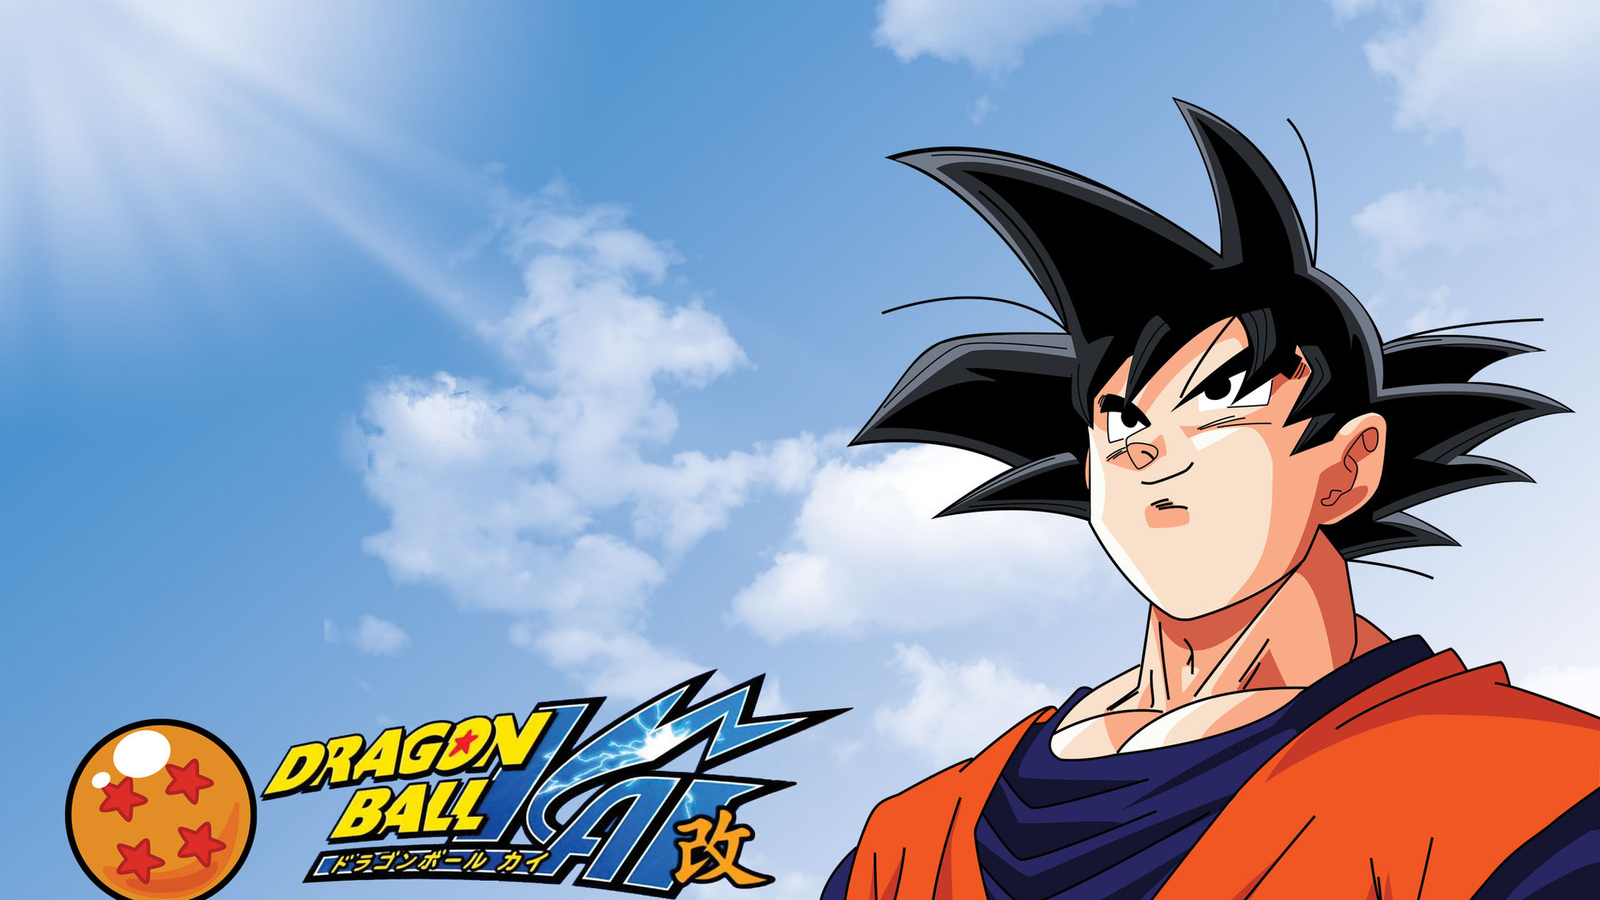 Bộ ảnh nền Goku Dragon Ball Kai là lựa chọn hoàn hảo cho những ai yêu thích nhân vật Goku và đặc biệt là phiên bản Dragon Ball Kai. Những hình ảnh chân thực, rõ nét cùng giai điệu nền nhạc phim sẽ khiến cho bạn có cảm giác như đang xem lại series phim Dragon Ball Yêu Thích.